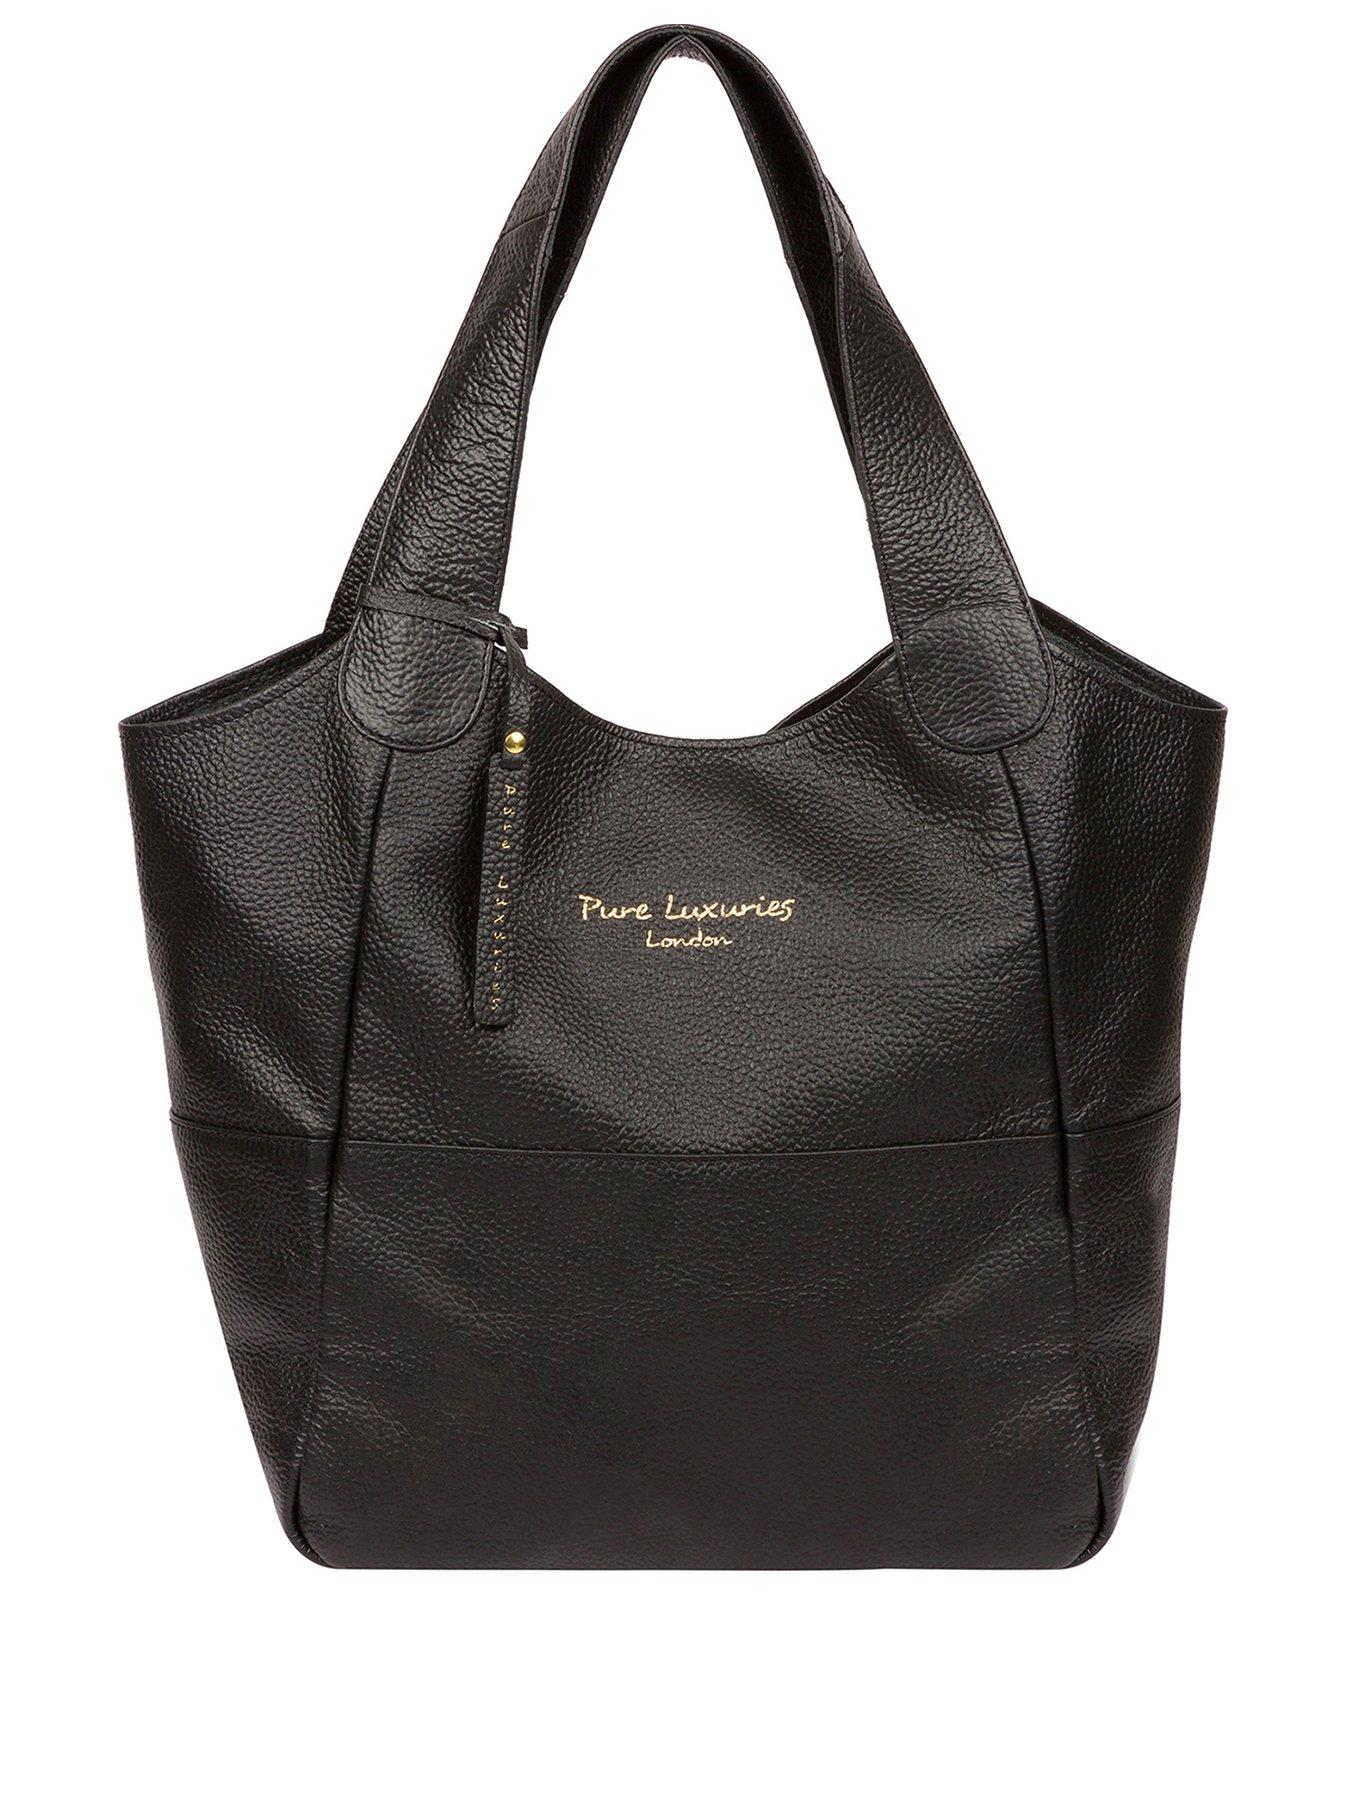  Freer Leather Tote Bag - Black